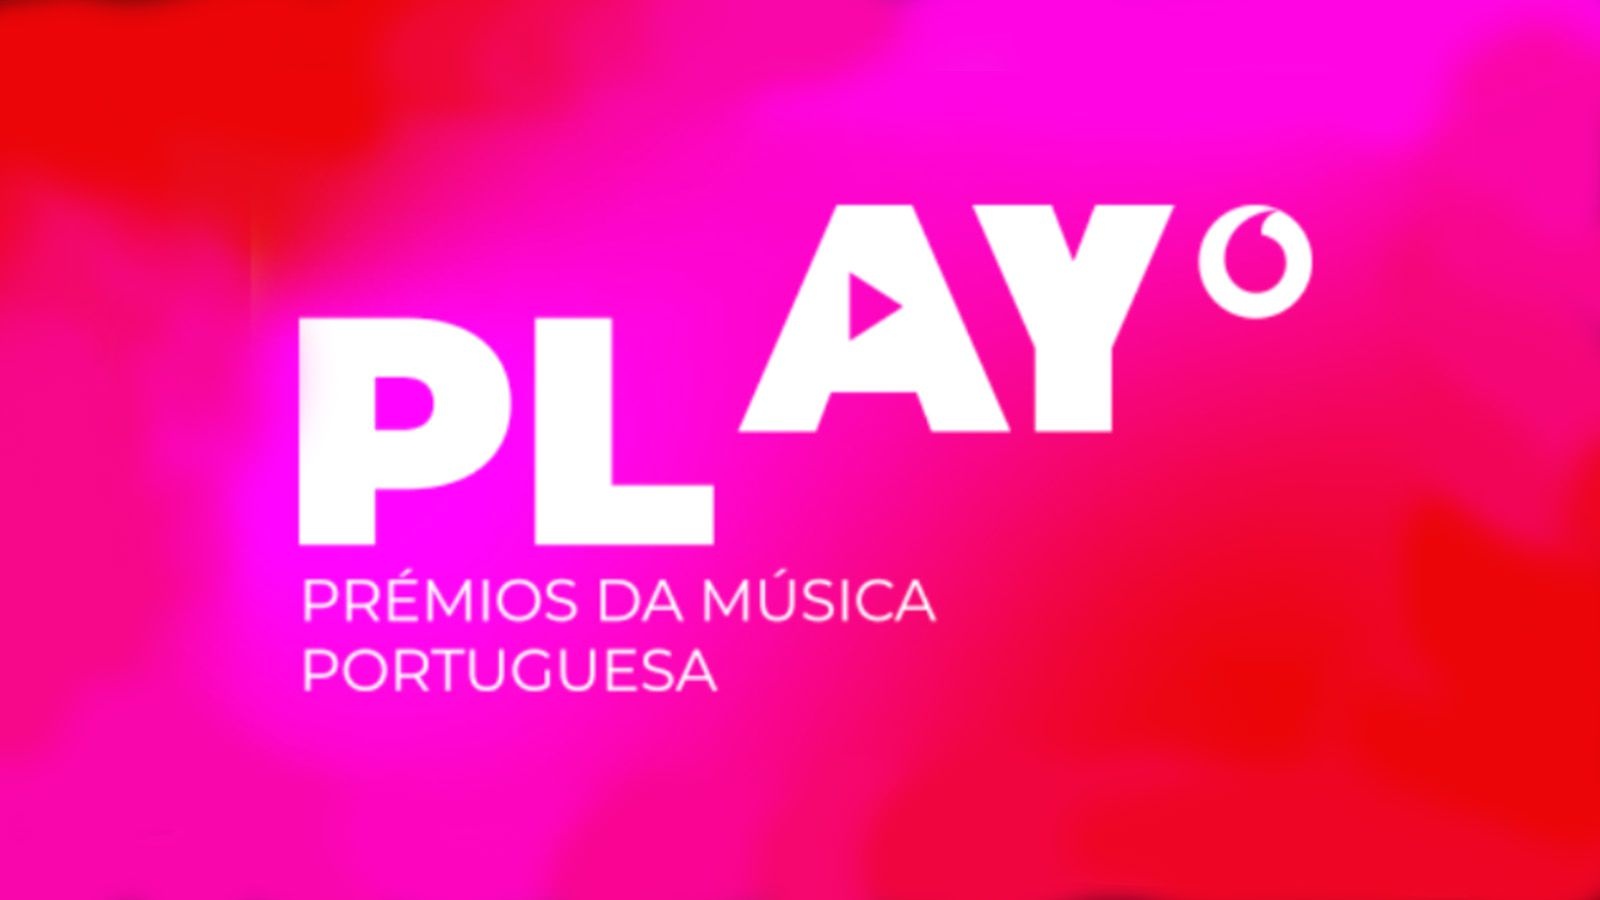 Play – Prémios da Música Portuguesa regressam ao Coliseu a 29 de julho